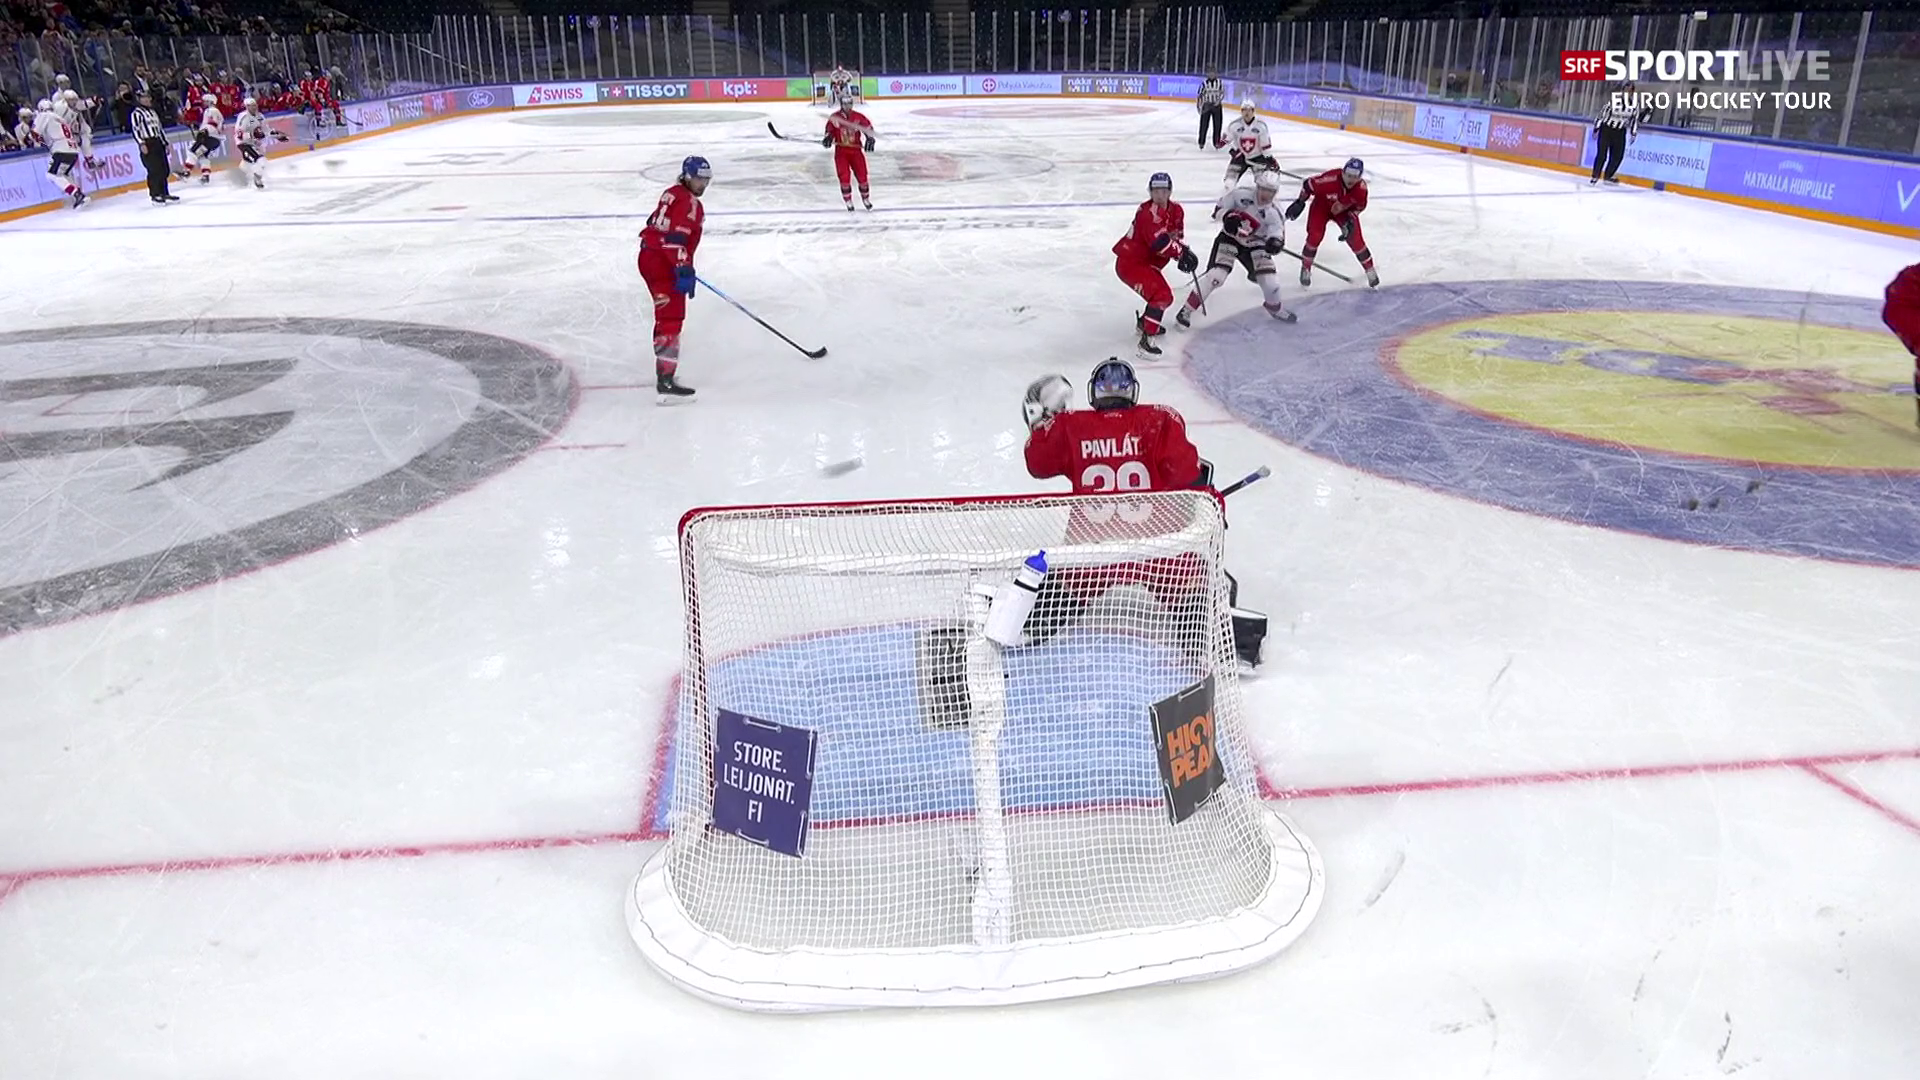 Euro Hockey Tour in Finnland - Sieglos am Vierländer-Turnier Schweiz unterliegt Tschechien - Sport